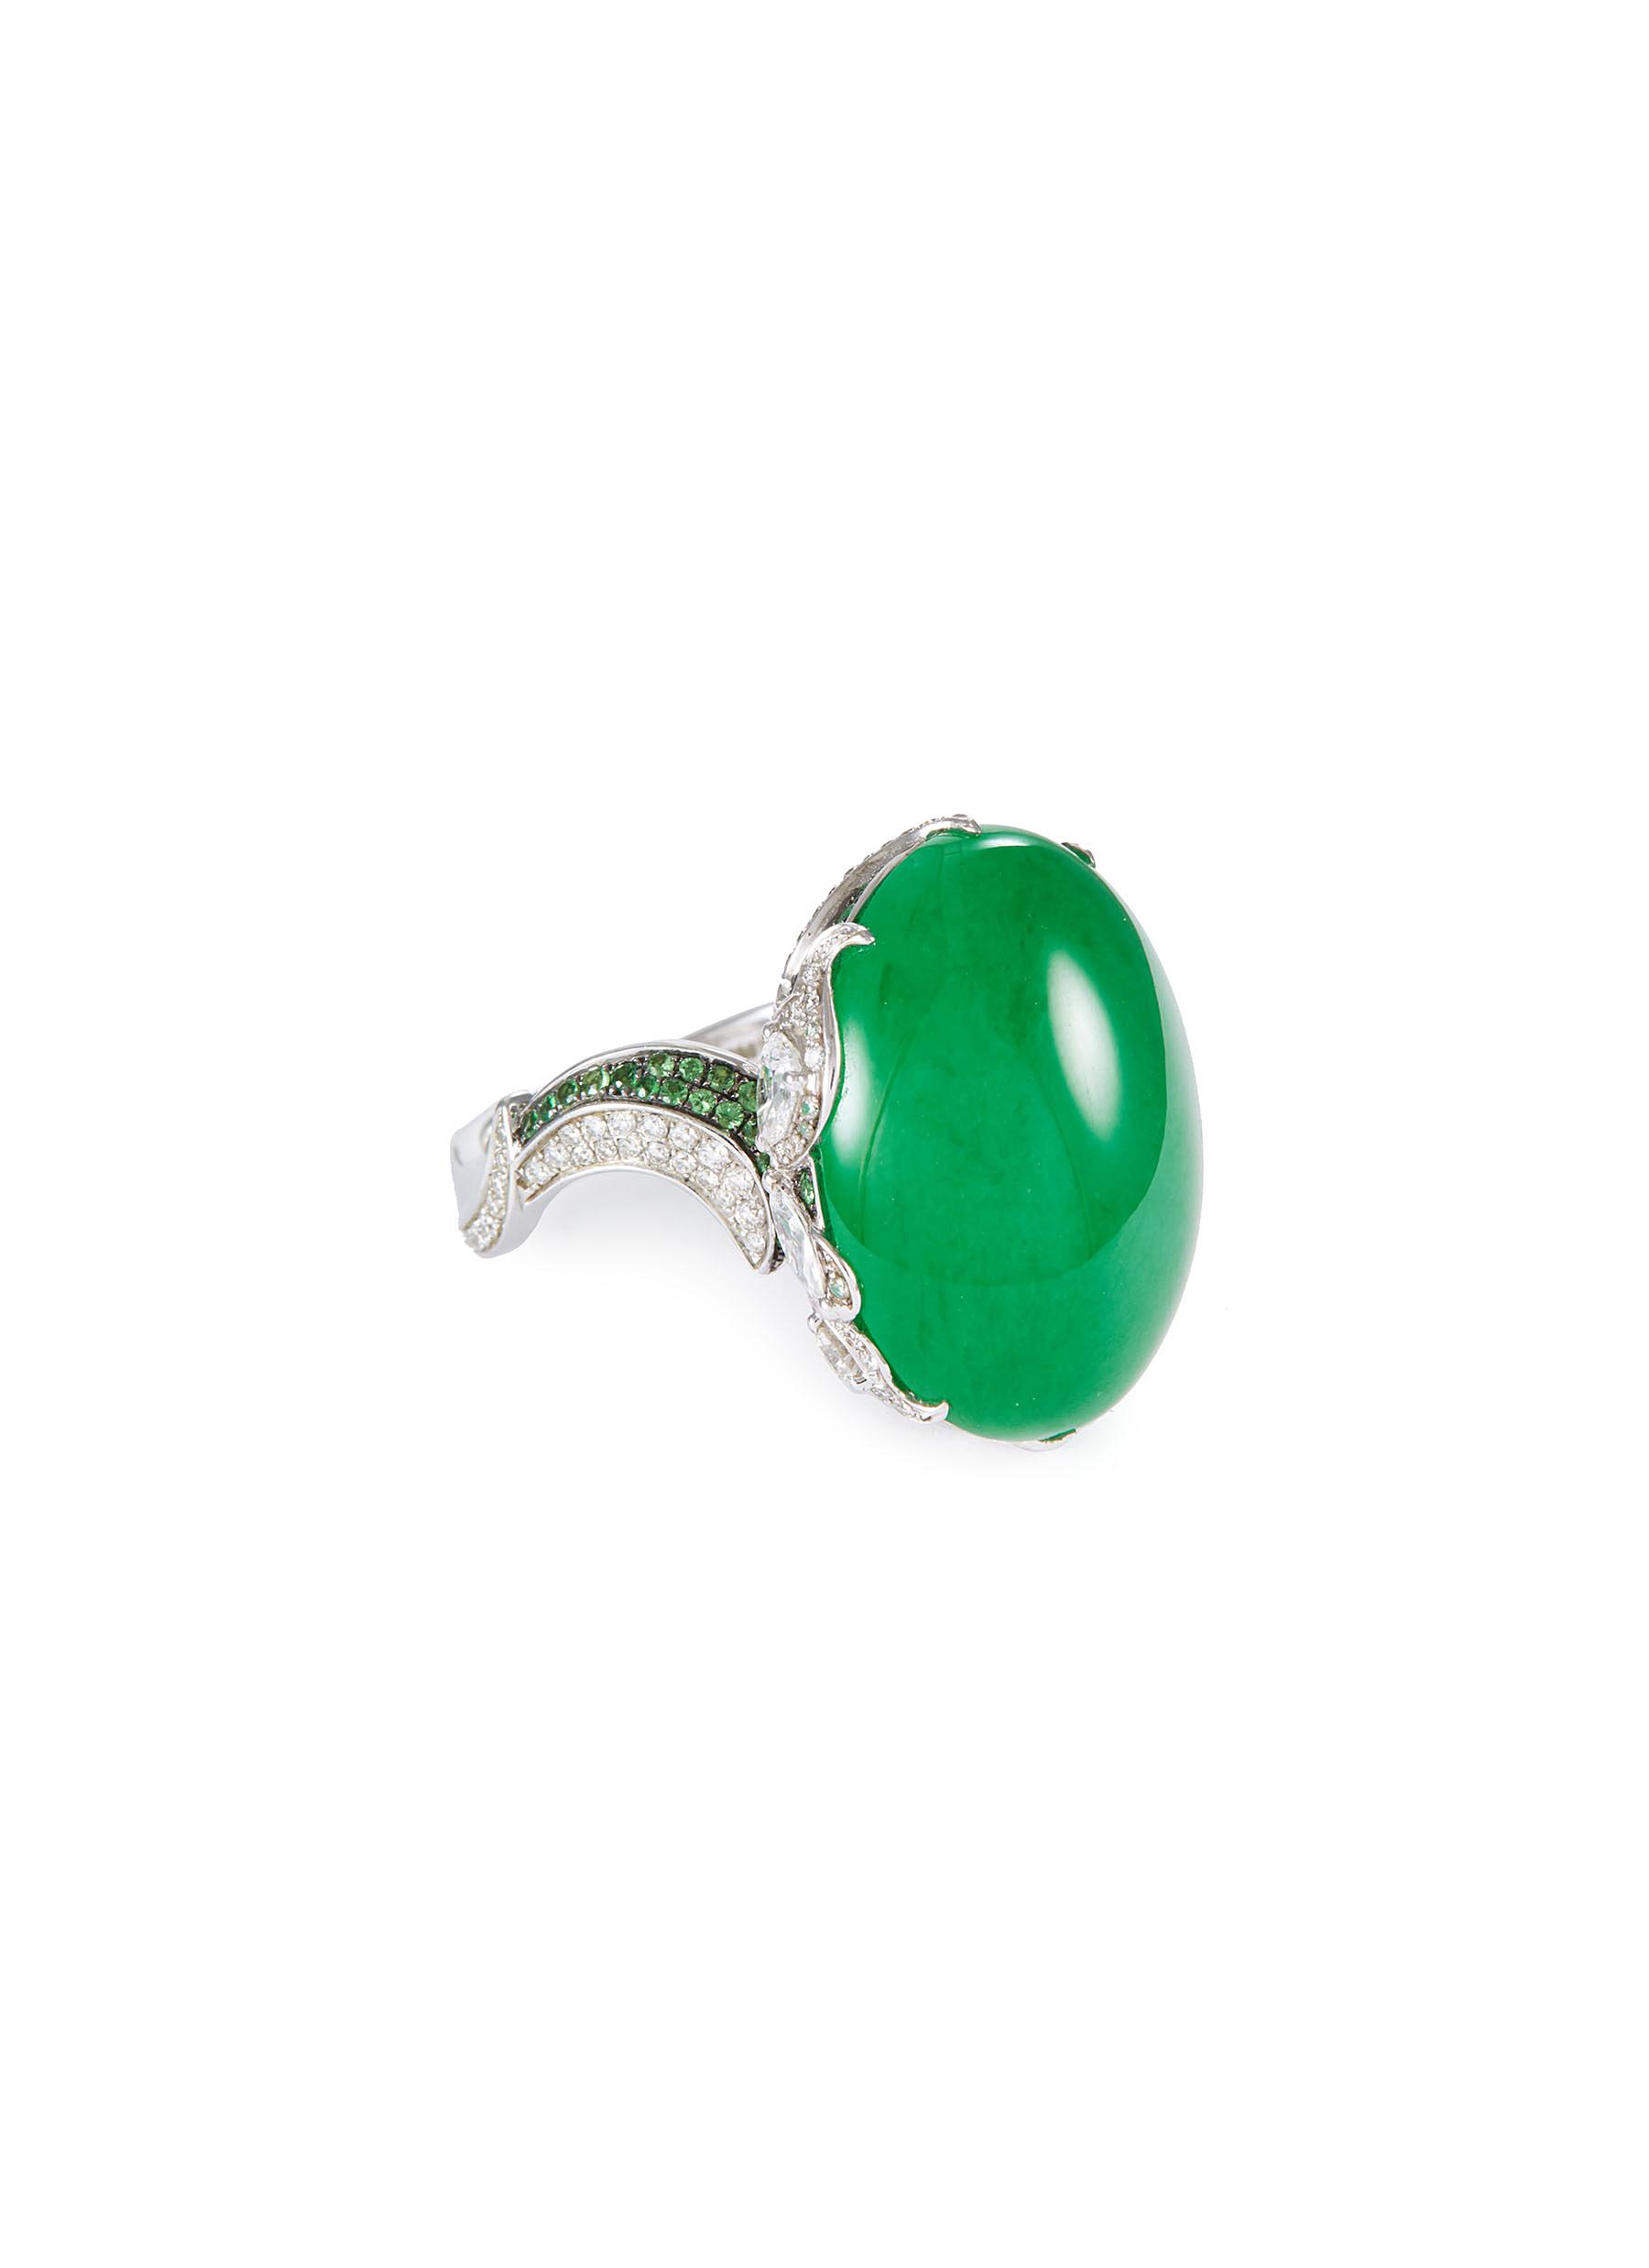 Diamond garnet jade 18k white gold ring